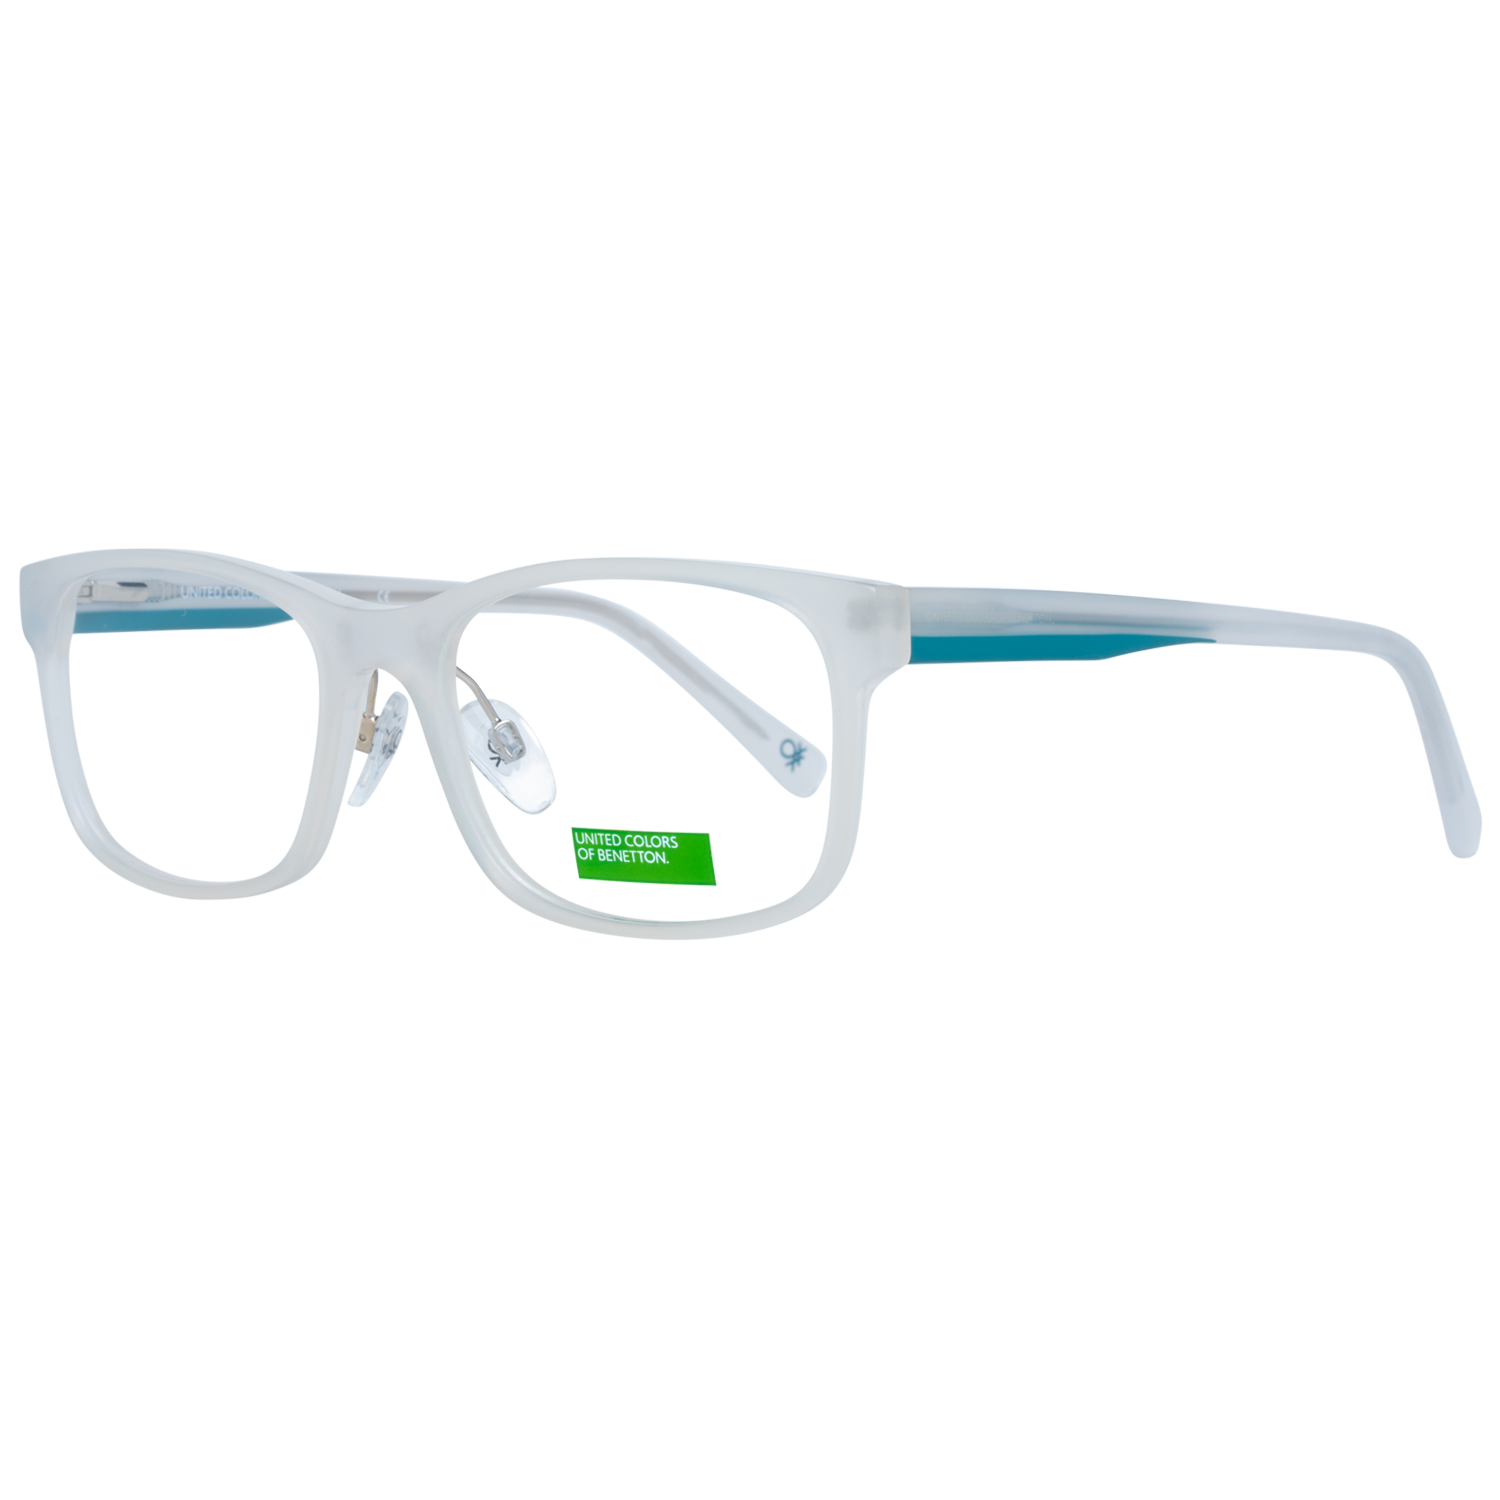 Benetton Frames Benetton Glasses Frames BEO1041 856 54 Eyeglasses Eyewear UK USA Australia 